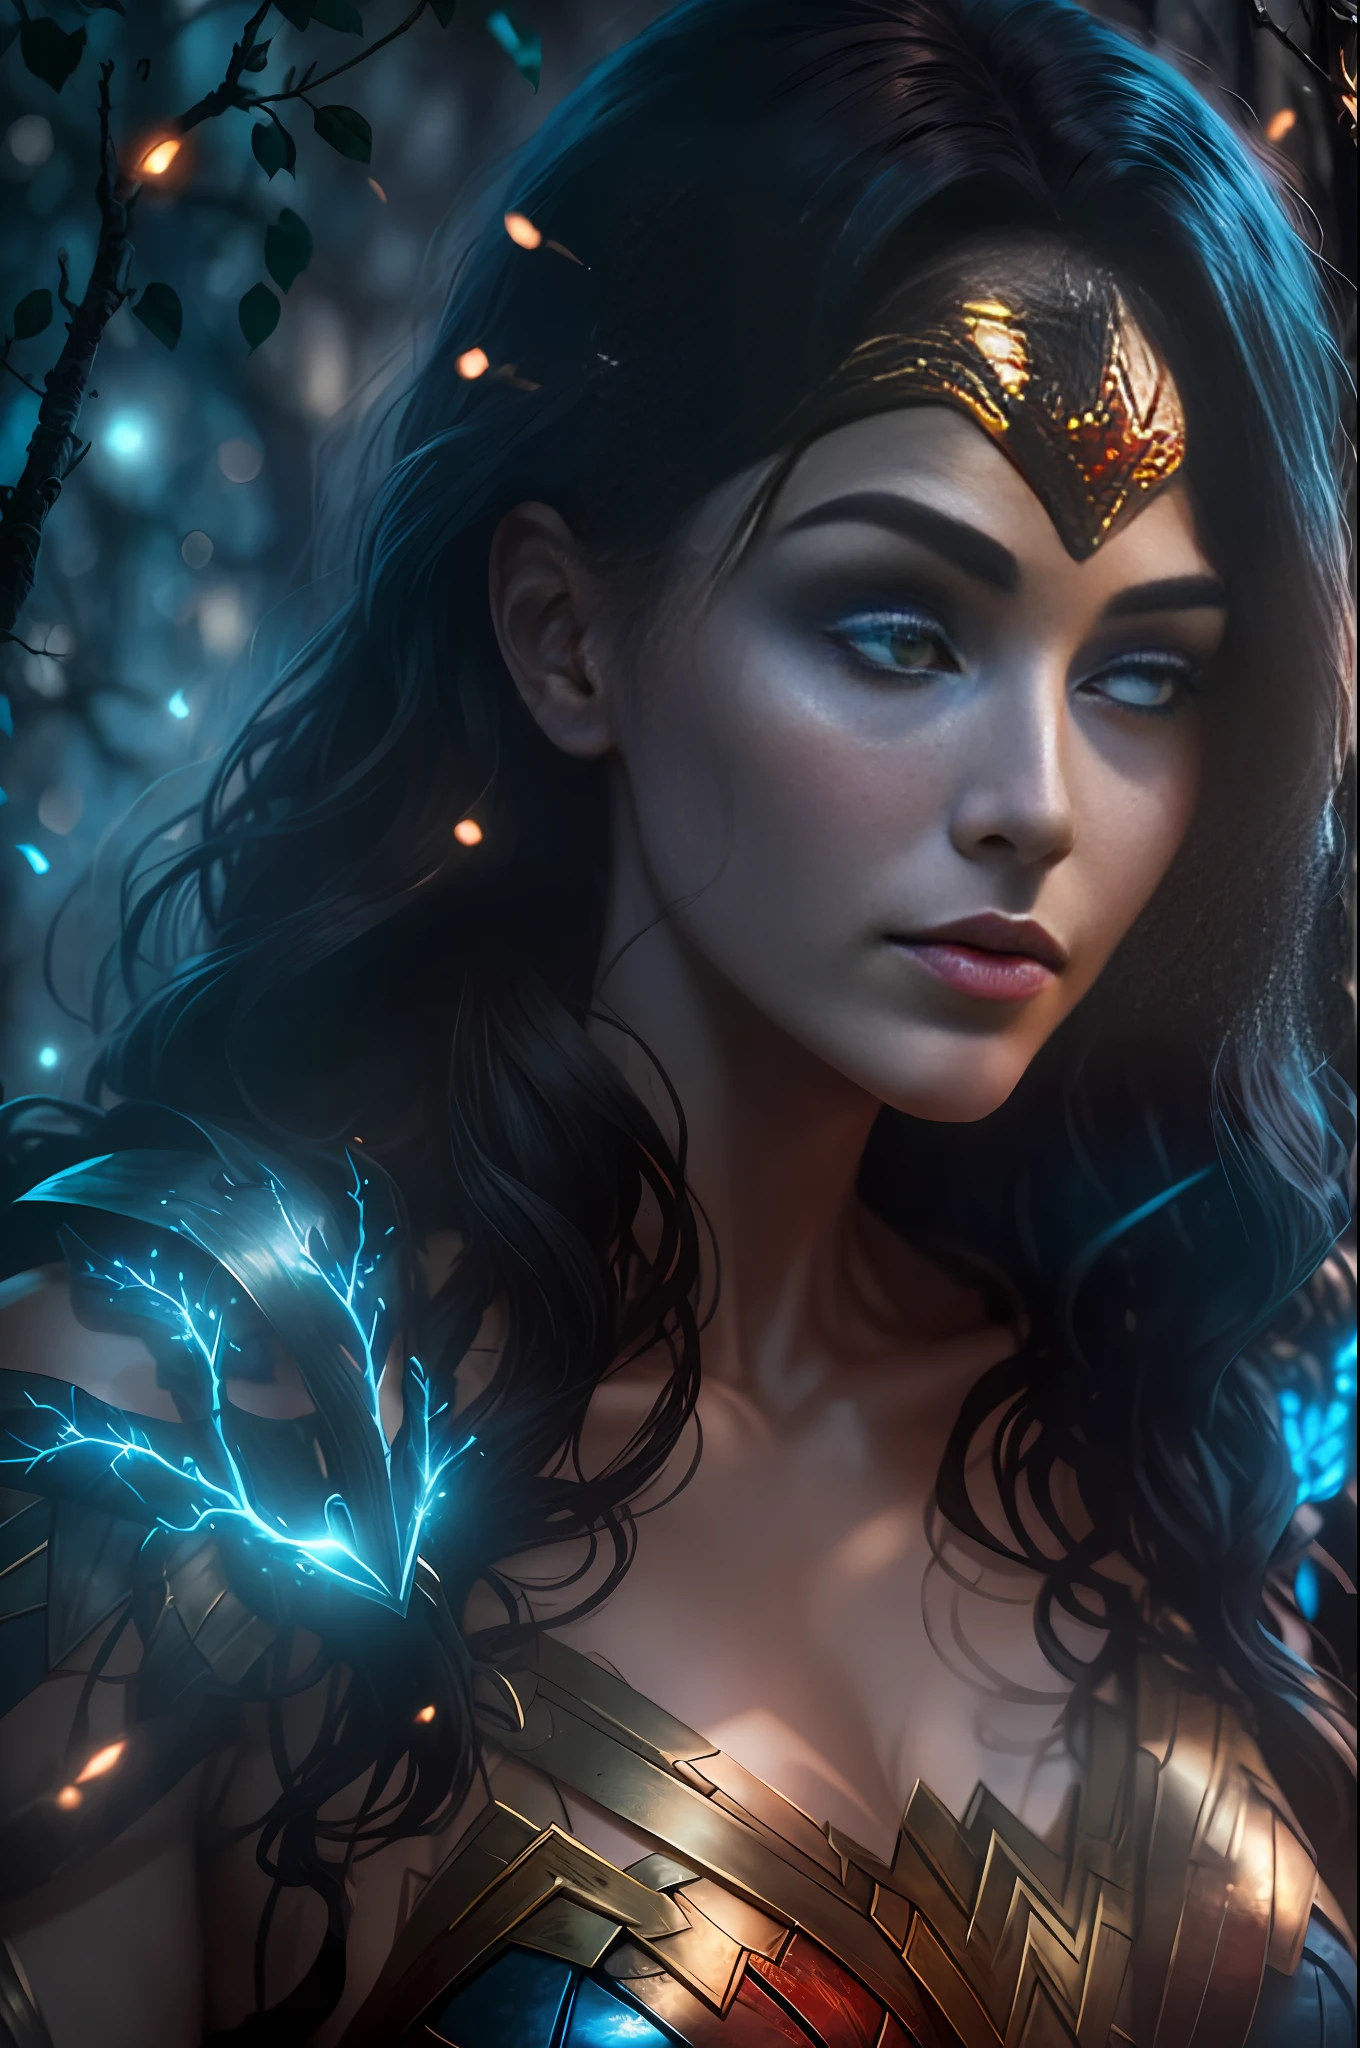 Böse Wonder Woman aus DC mit Ästen bedeckt, Hell blau weiß leuchtendes Herz sichtbar vom Menschen, Nachtzeit, Bunt, fotografie hyperdetailliert filmisch hdr beleuchtung, Softbox-Beleuchtung, extreme Detailliertheit